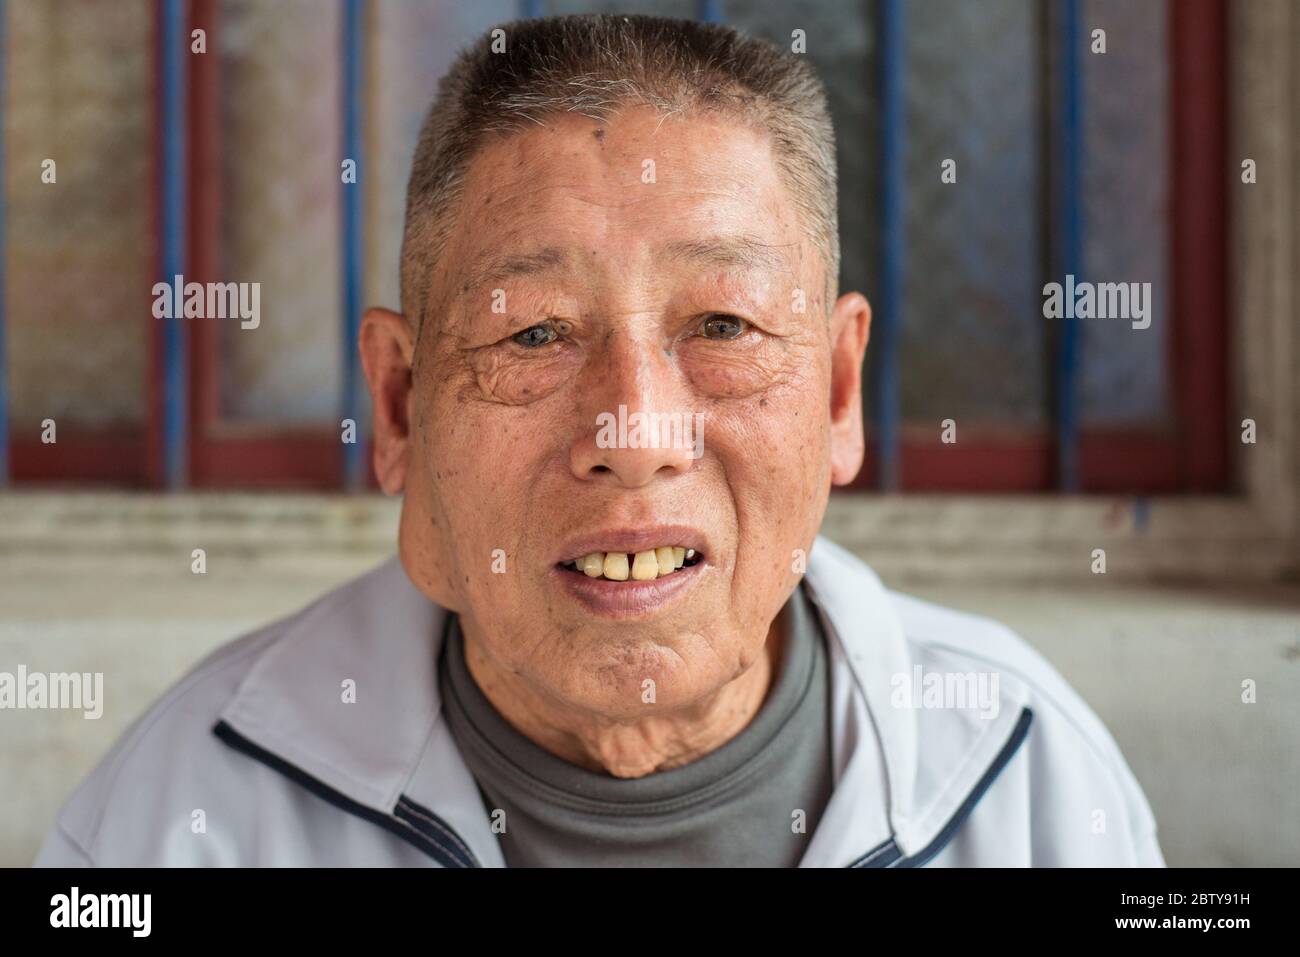 Hsinchu / Taiwan - 15 septembre 2019 : Portrait des hommes taïwanais dans la ville rurale Banque D'Images